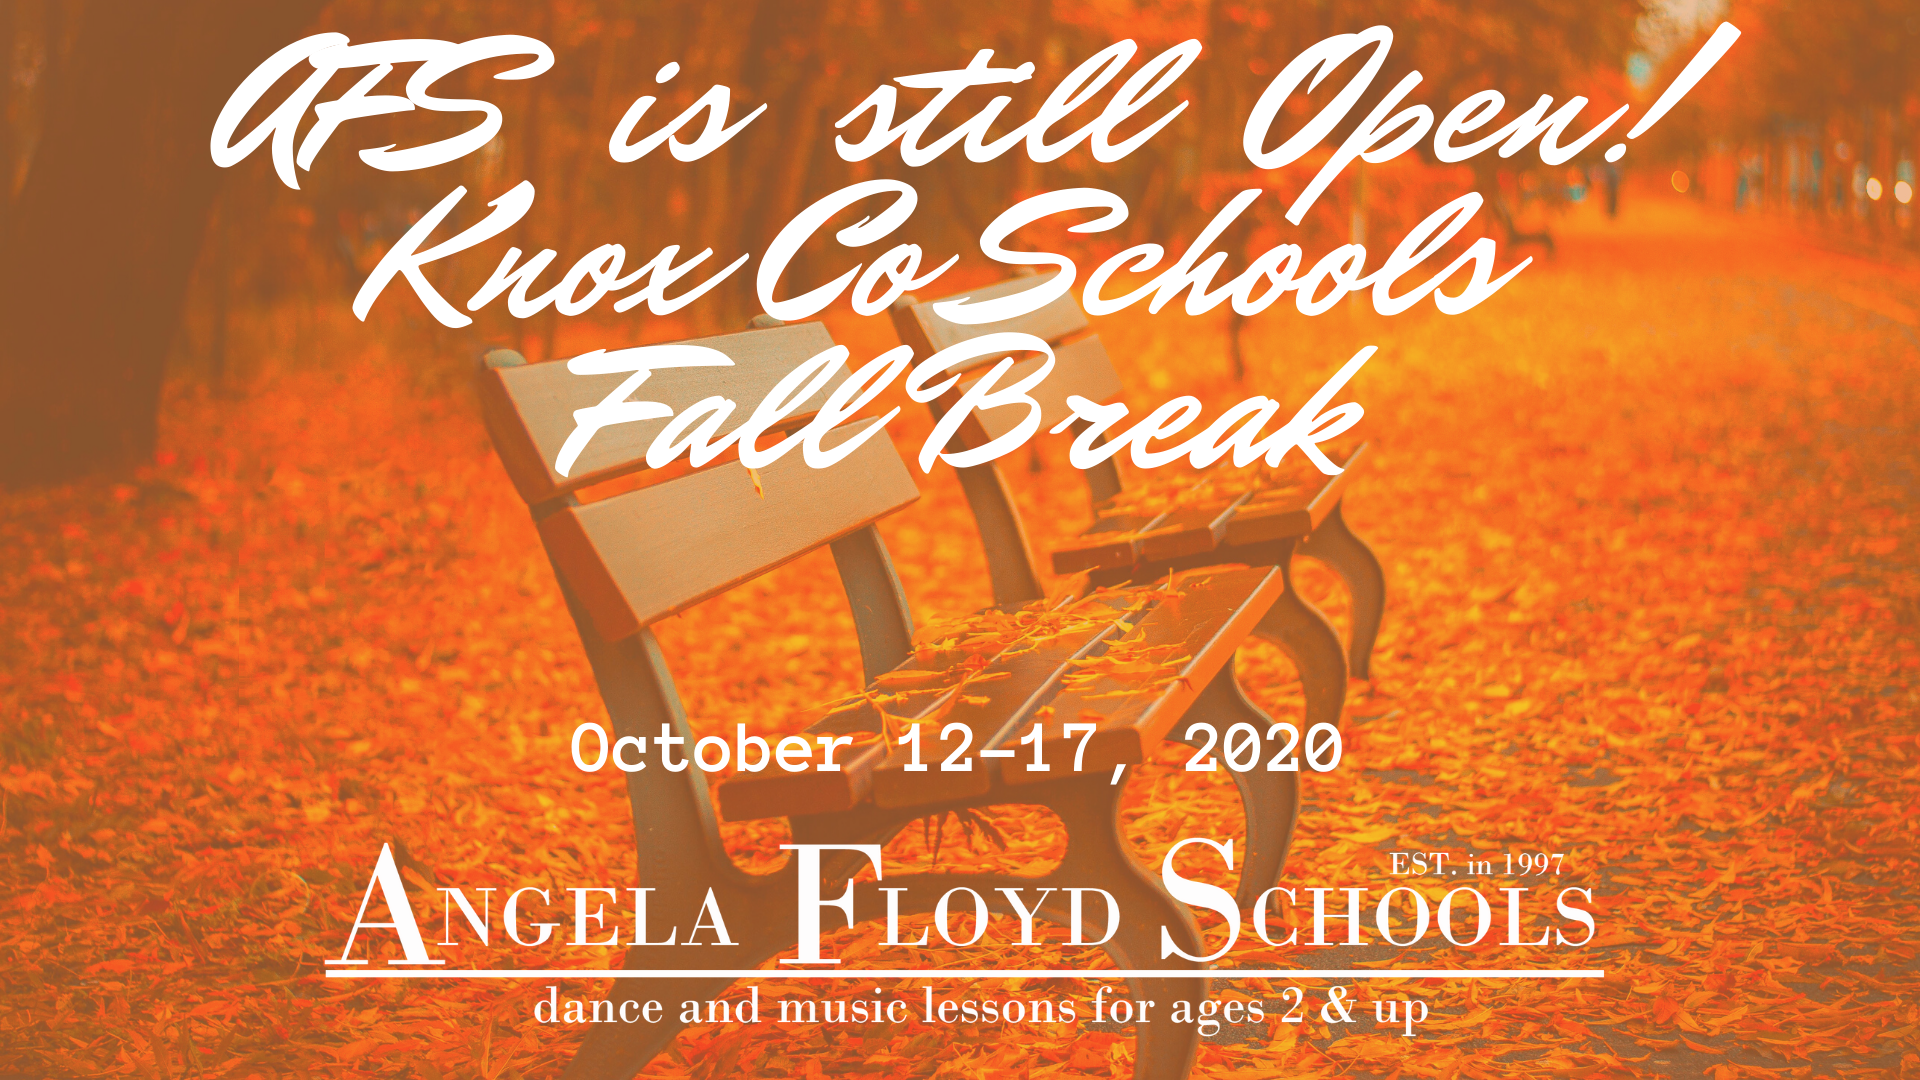 Knox Co Schools Fall Break AFS is still Open! (1)